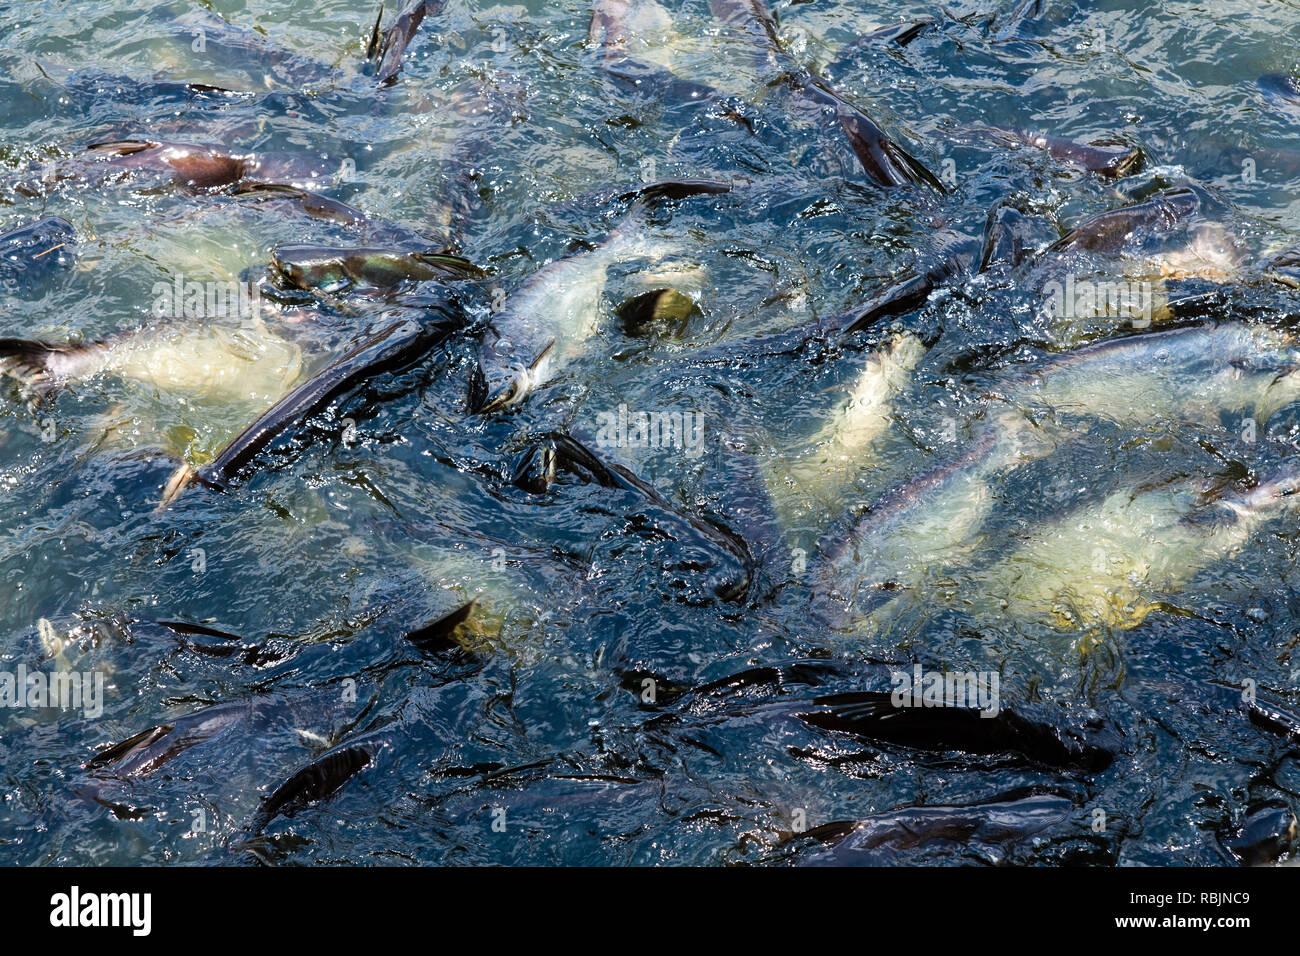 Tonnes de poissons à la surface de l'eau Banque D'Images